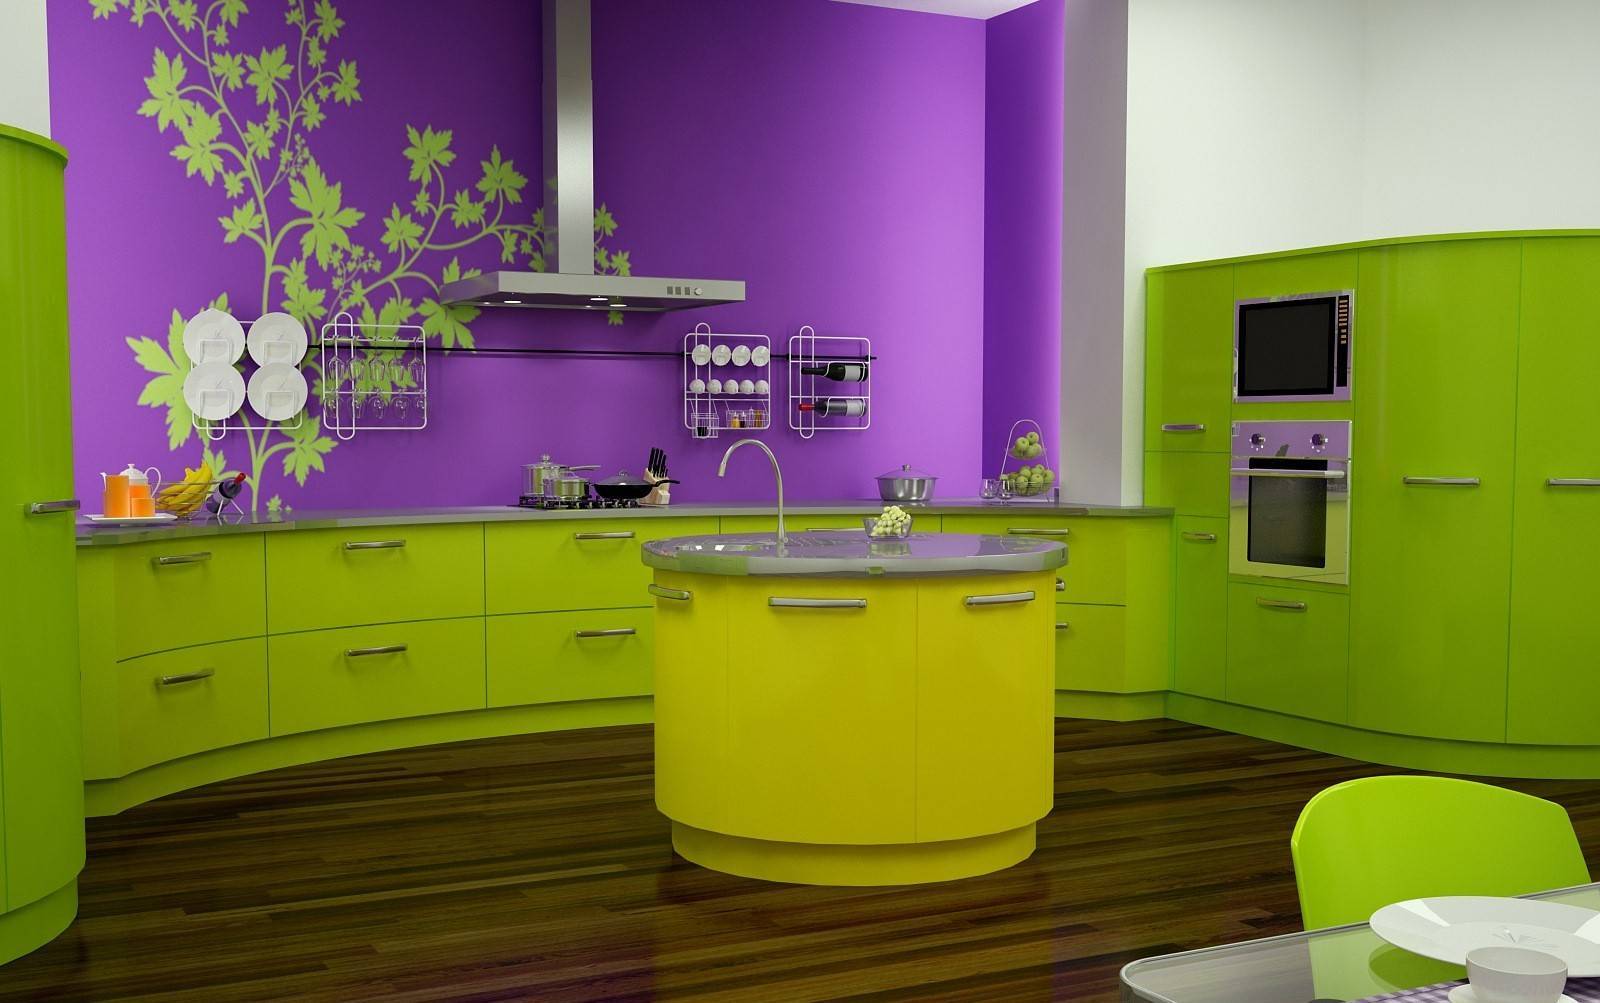 Цветовая гамма для кухни: что говорит психология и фен шуй